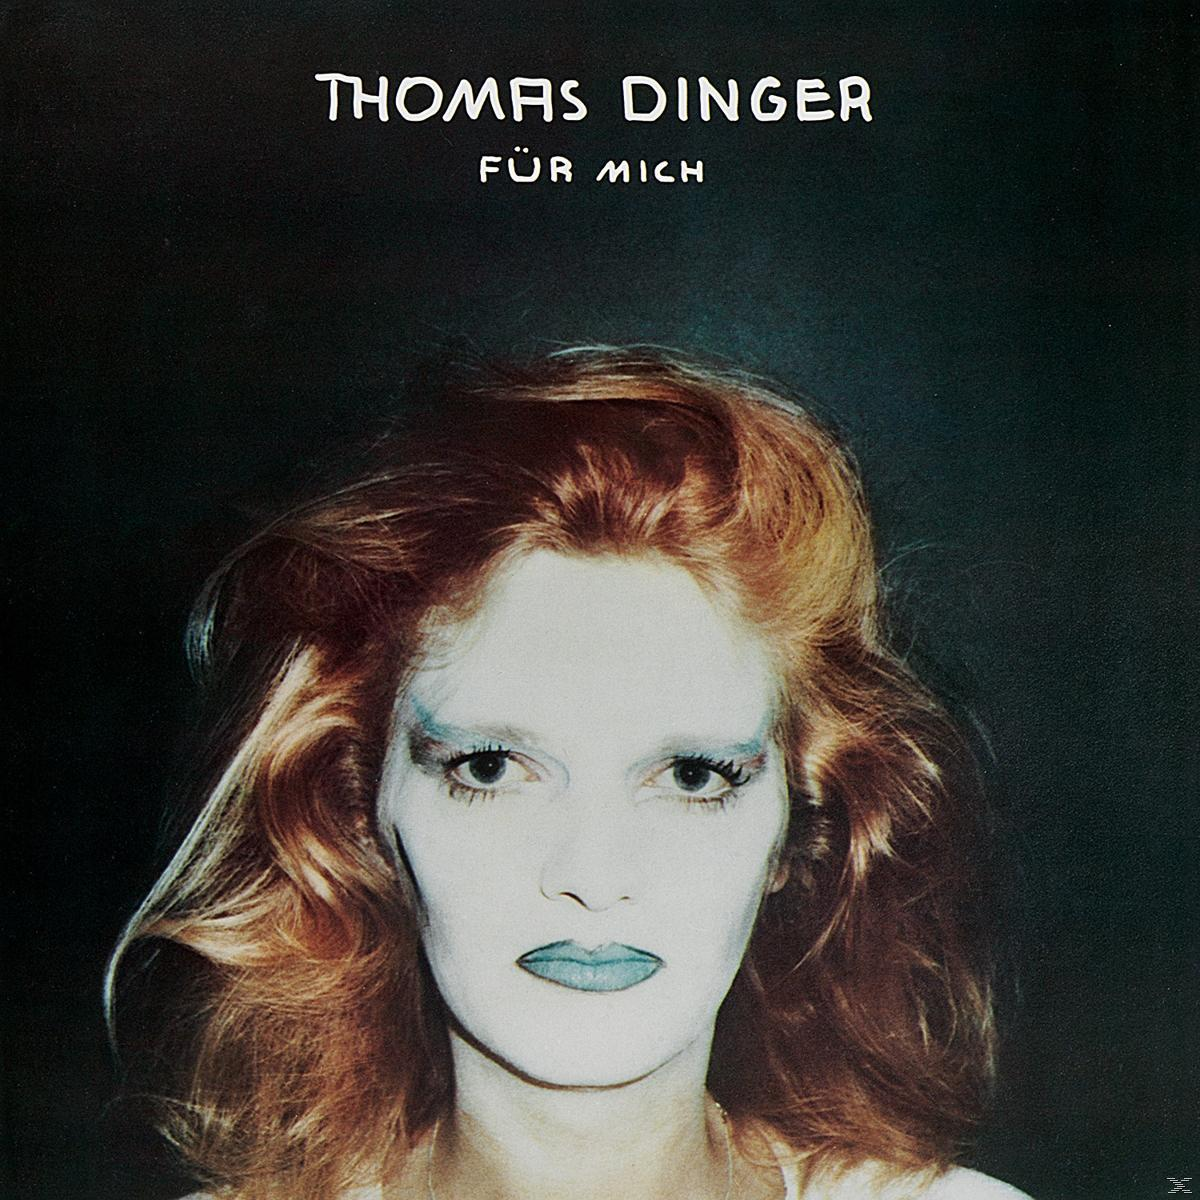 Thomas - Mich (CD) Für - Dinger